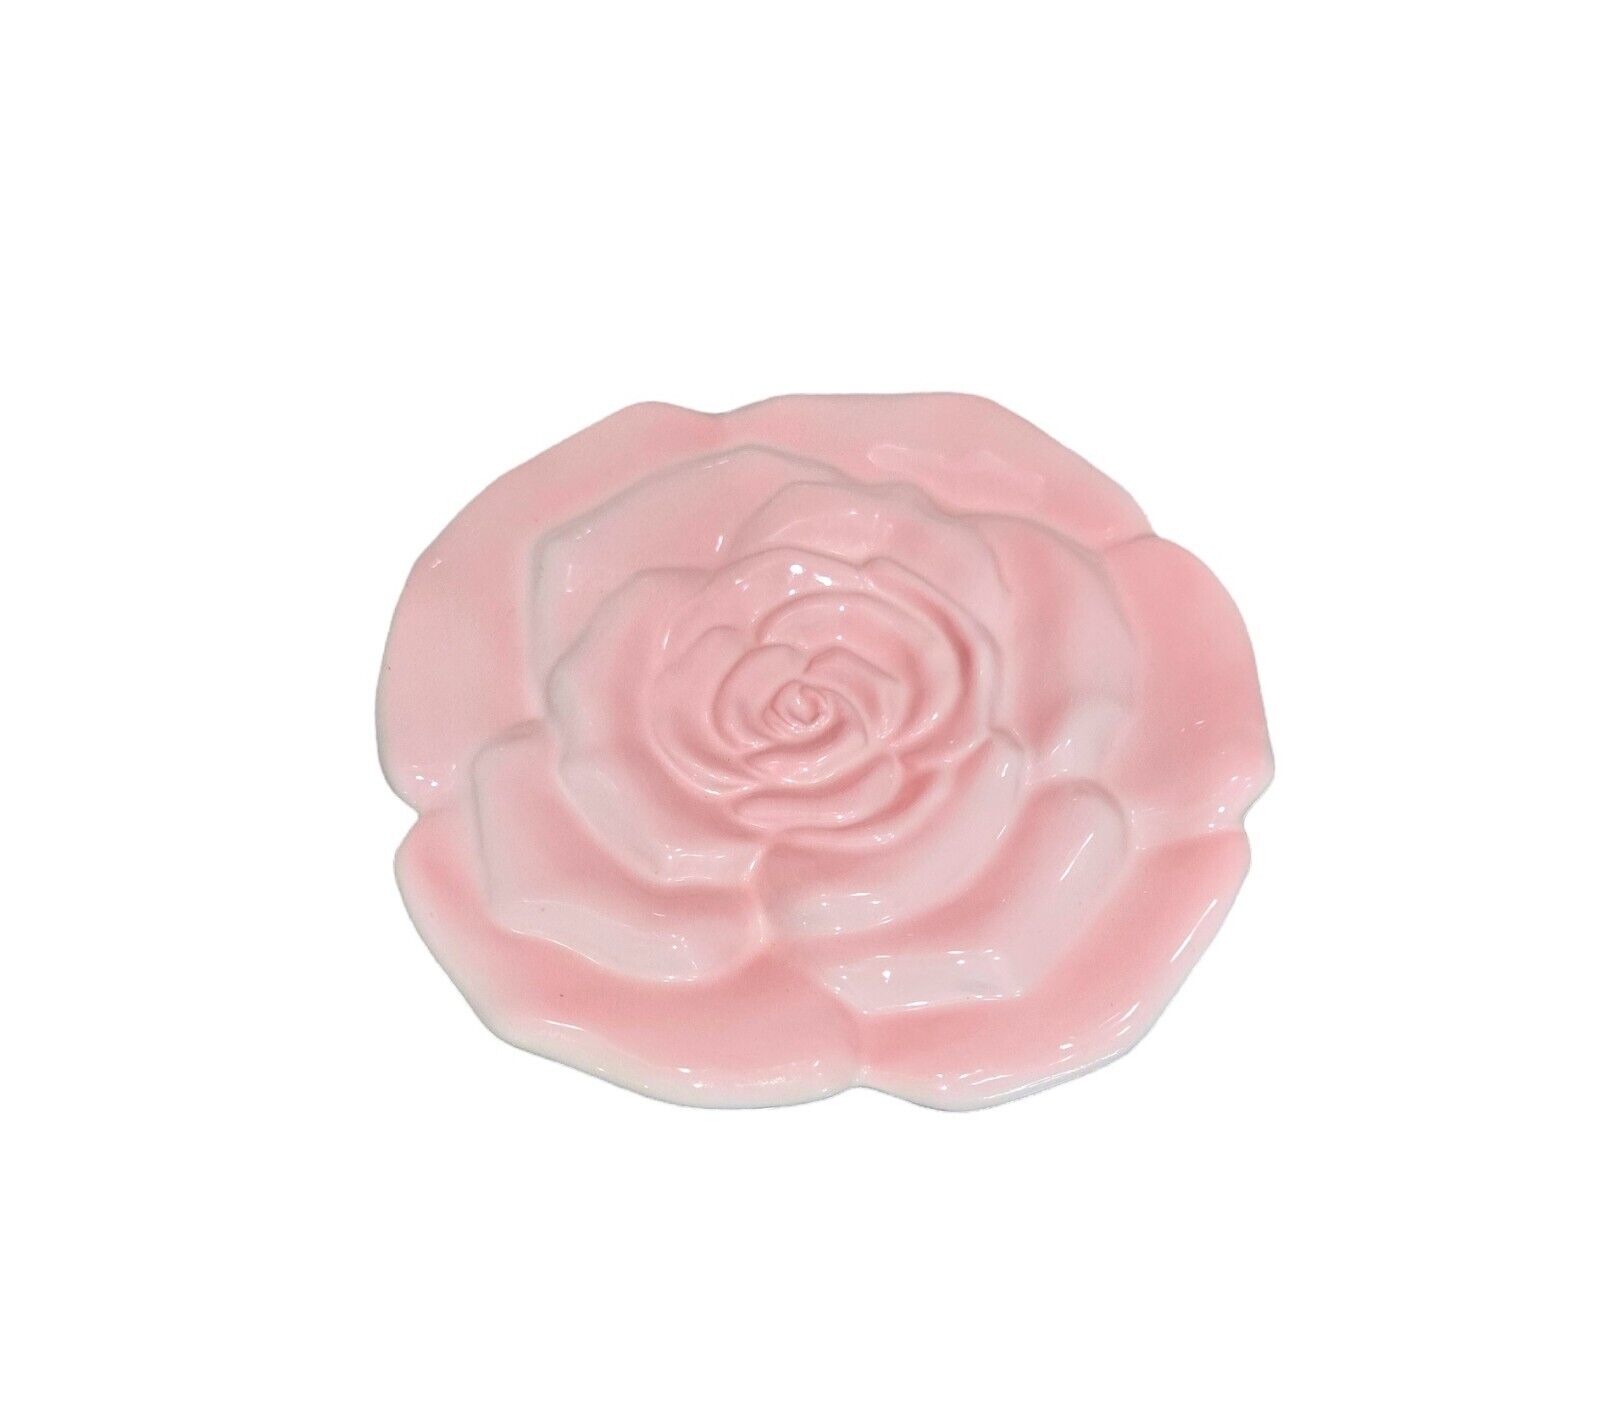 Vintage Teleflora Gift Pink Rose Ceramic Decorative Saucer - Pre-loved